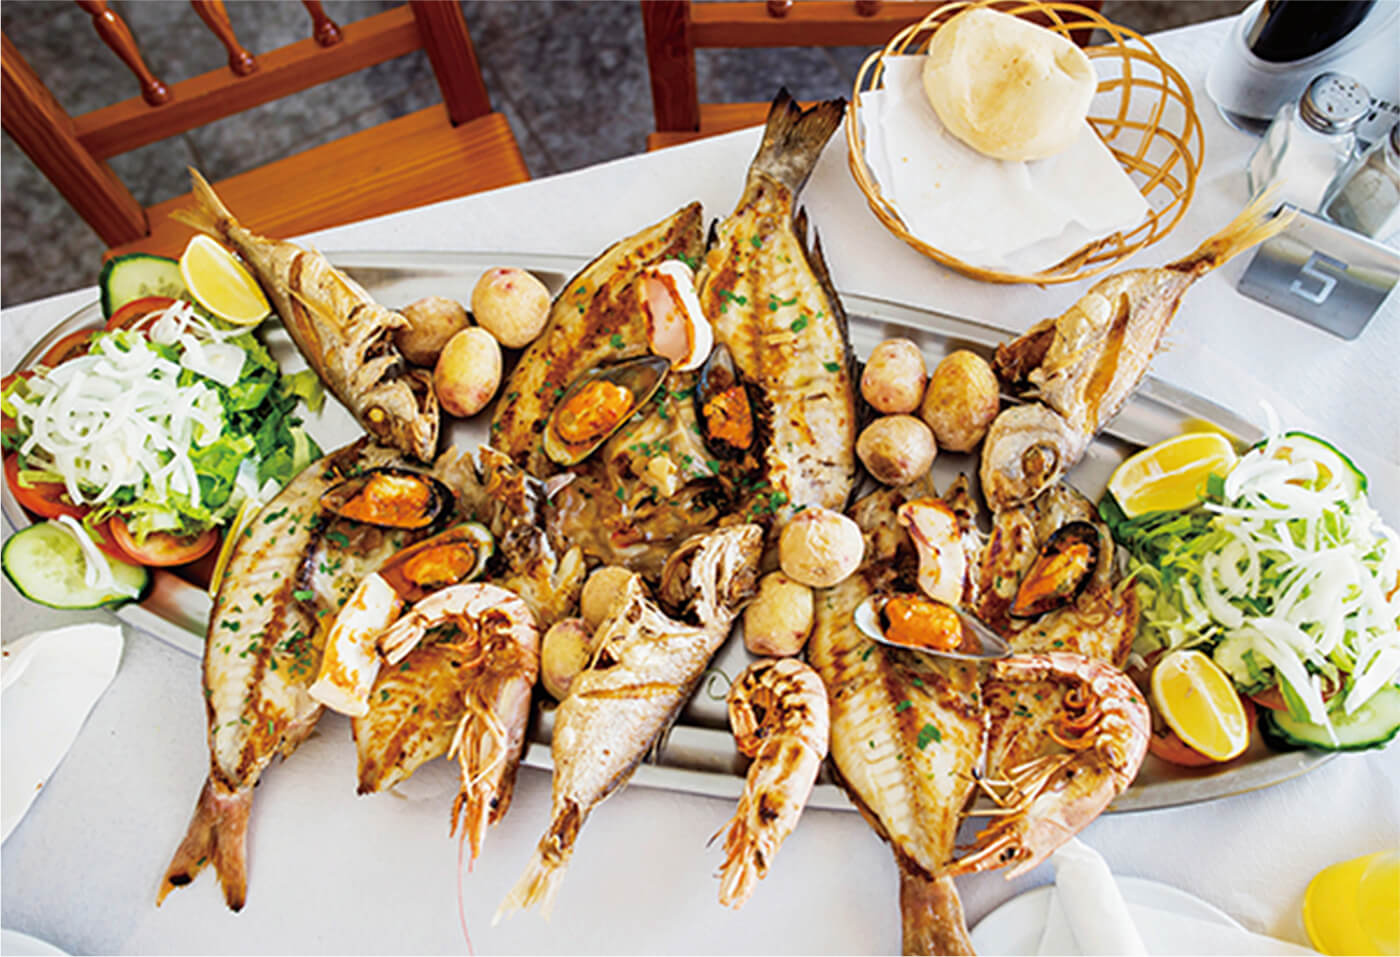 種類も豊富で新鮮な魚介料理が味わえます　※写真はイメージです。当社ツアーでは提供されません。